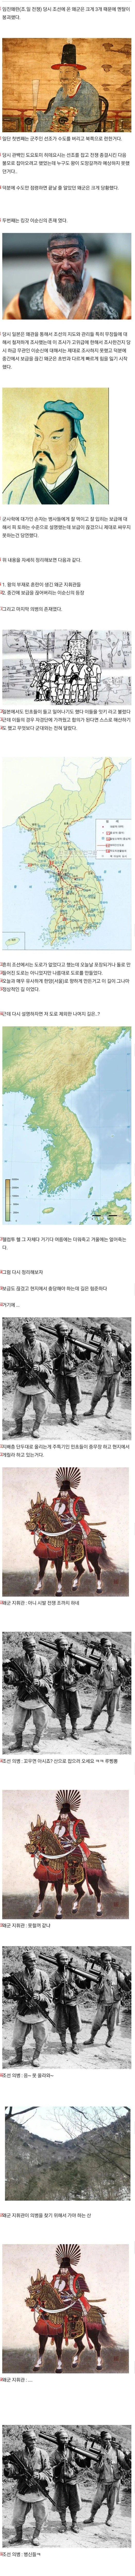 文禄·慶長の役当時、朝鮮の義兵が日本軍に行ったこと